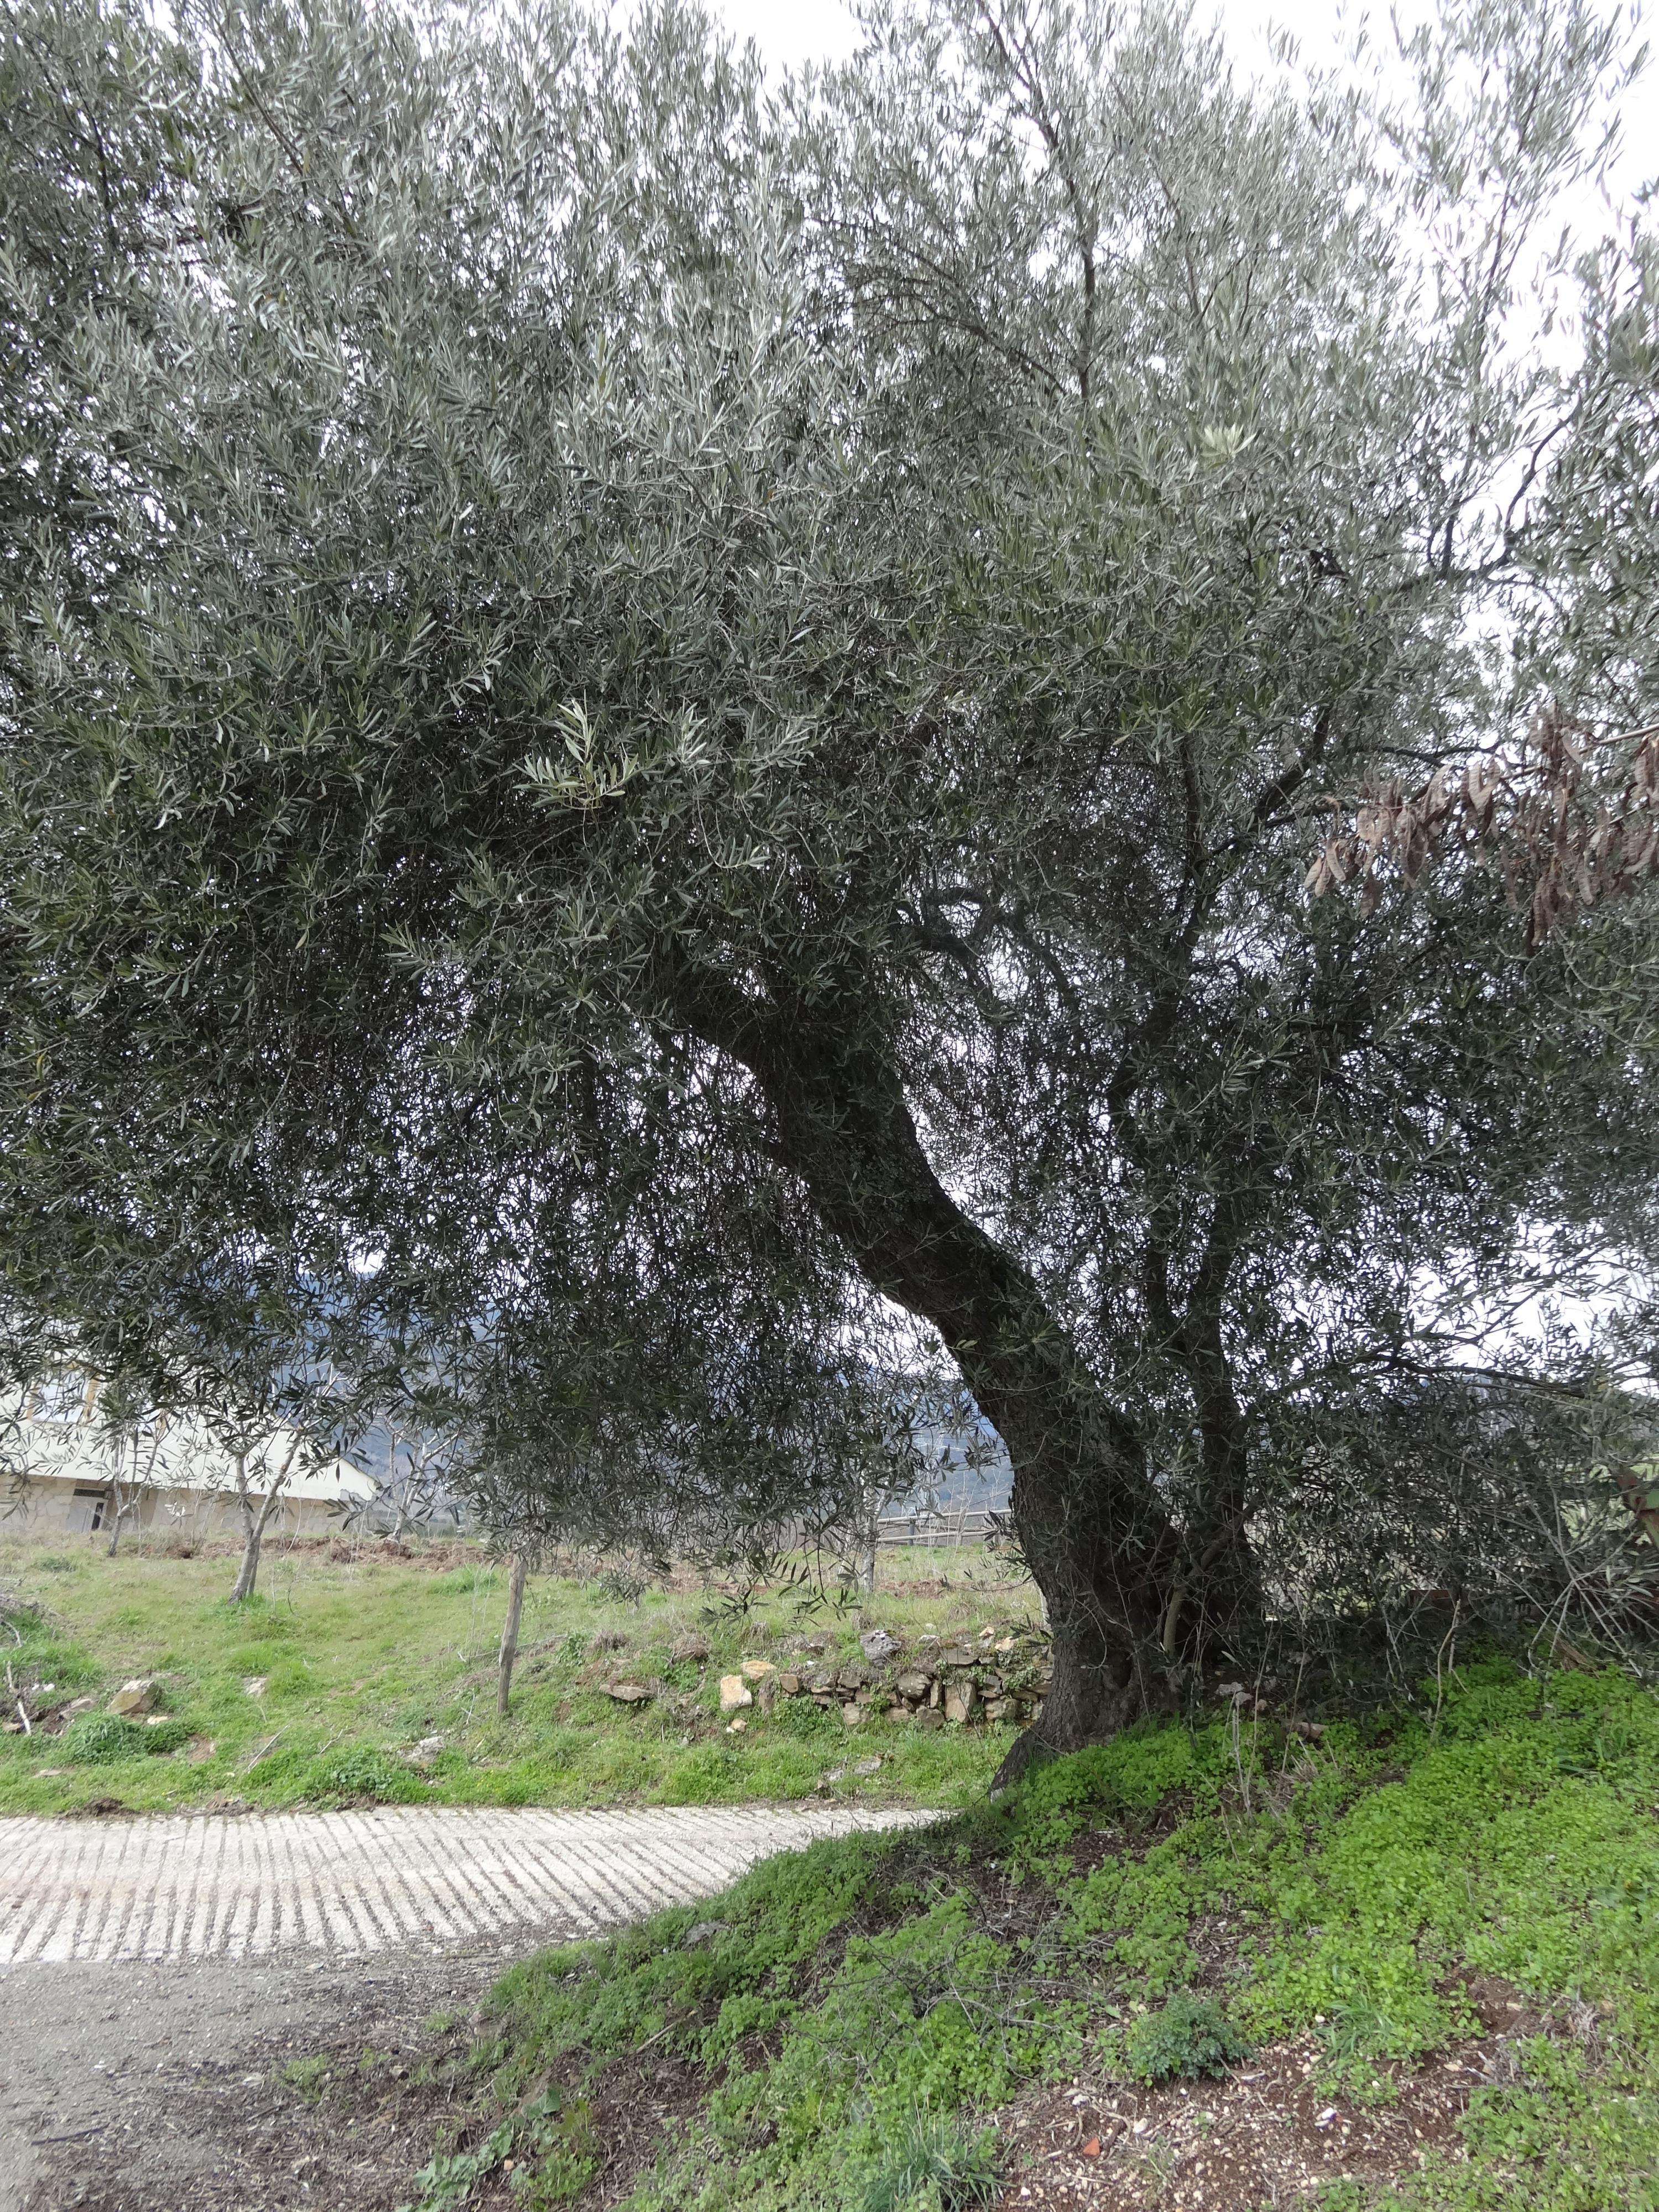 Un olivo gallego centenario.
Imagen cedida por María del Carmen Martínez Rodríguez.